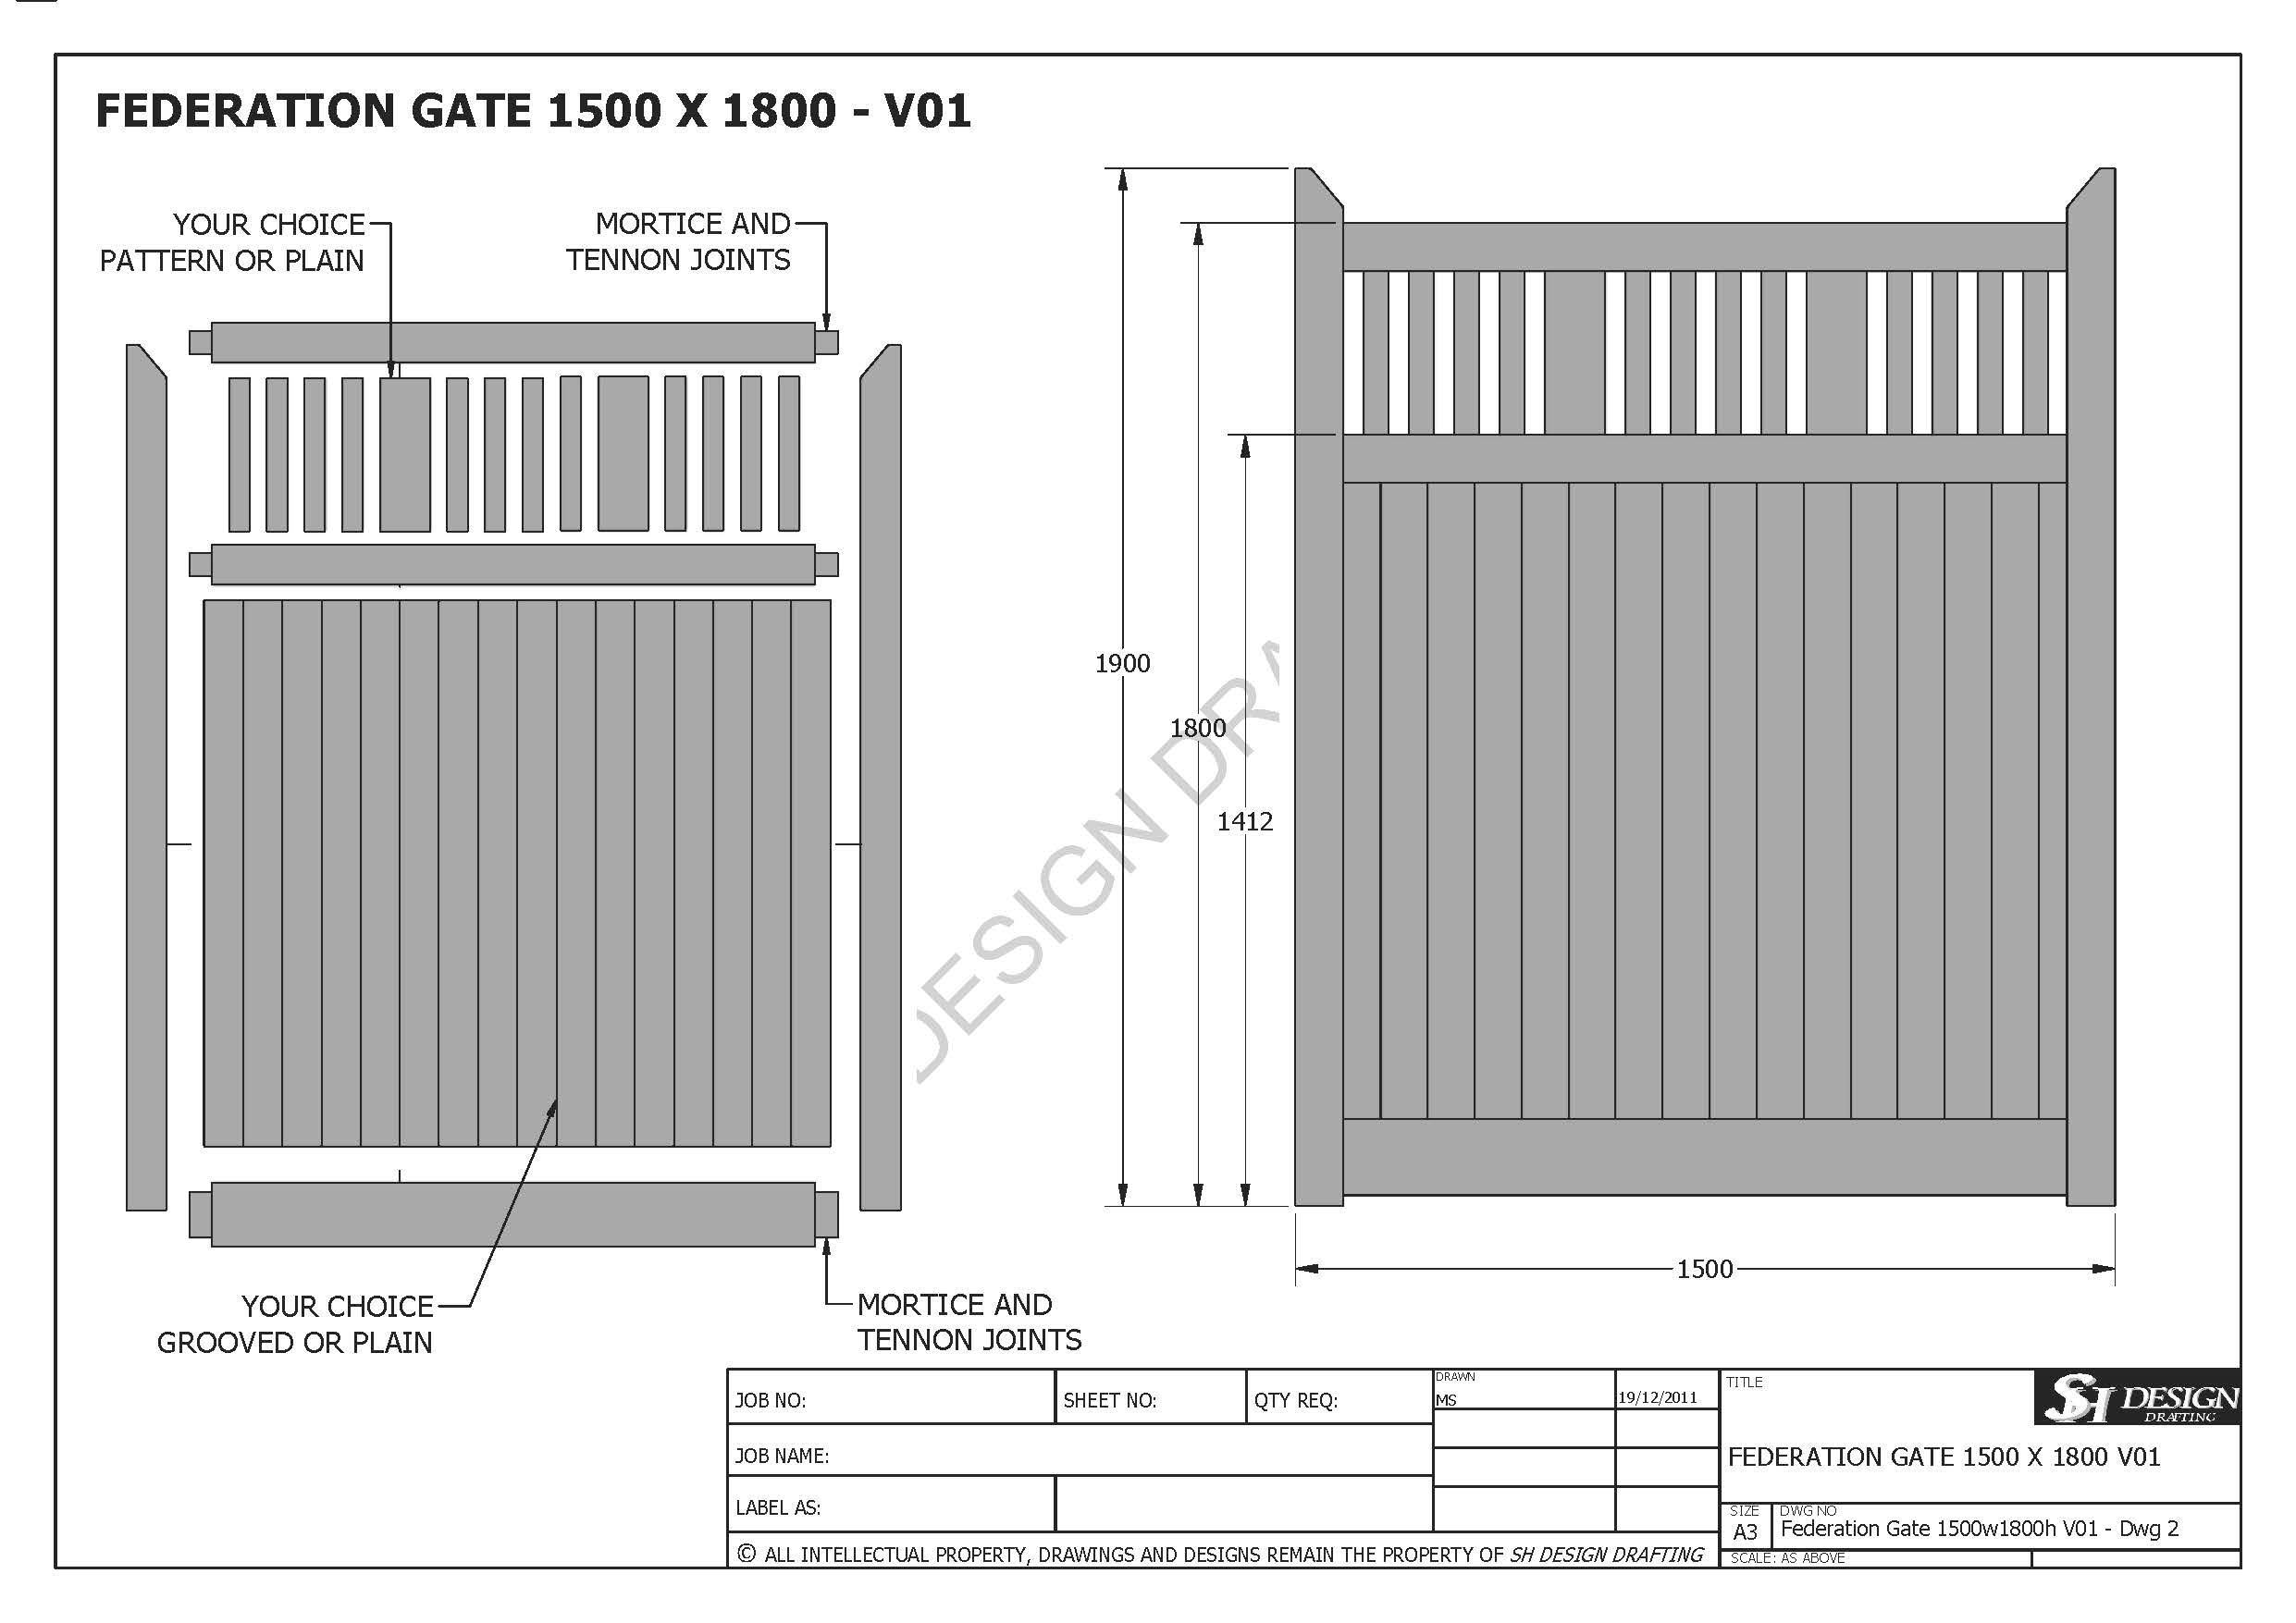 Federation Gate 1500 x 1800 - V01